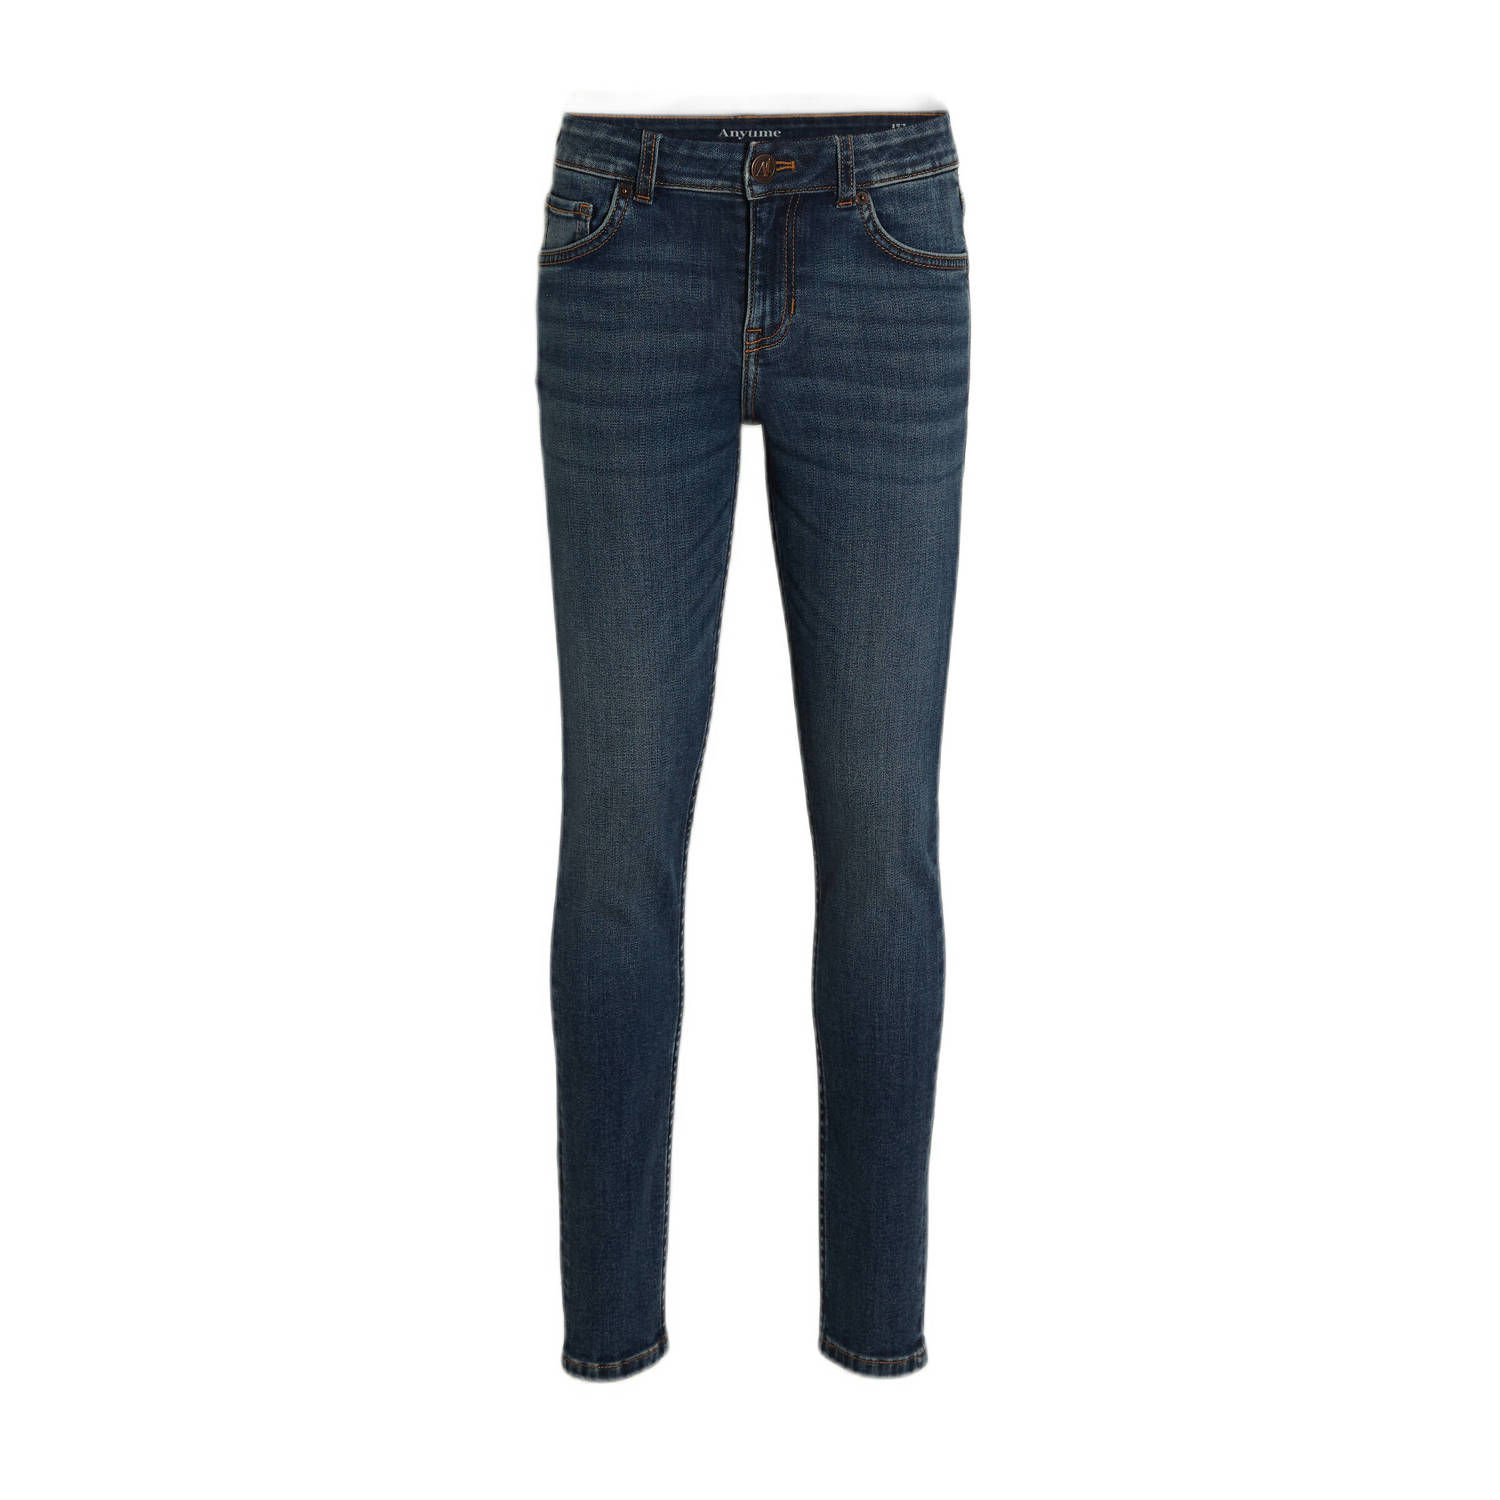 Anytime skinny jeans donkerblauw Jongens Denim 128